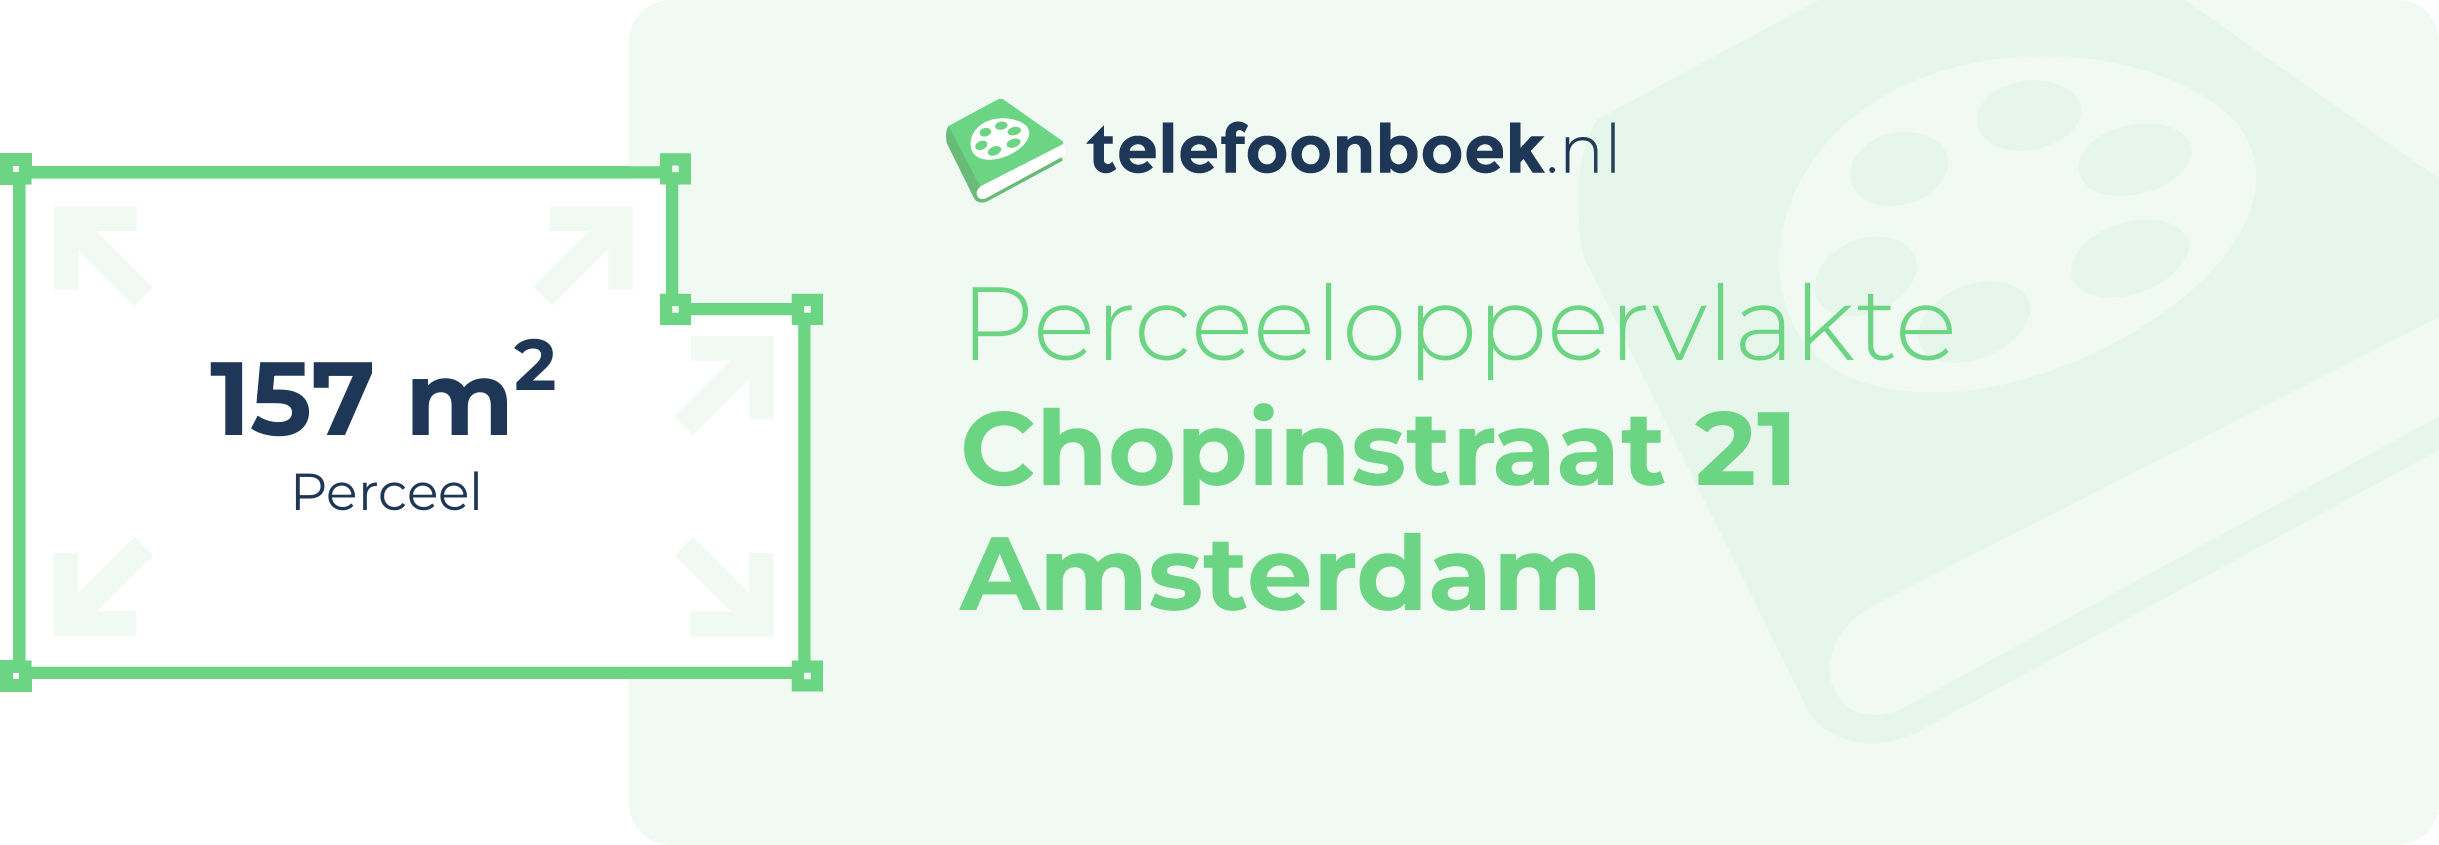 Perceeloppervlakte Chopinstraat 21 Amsterdam